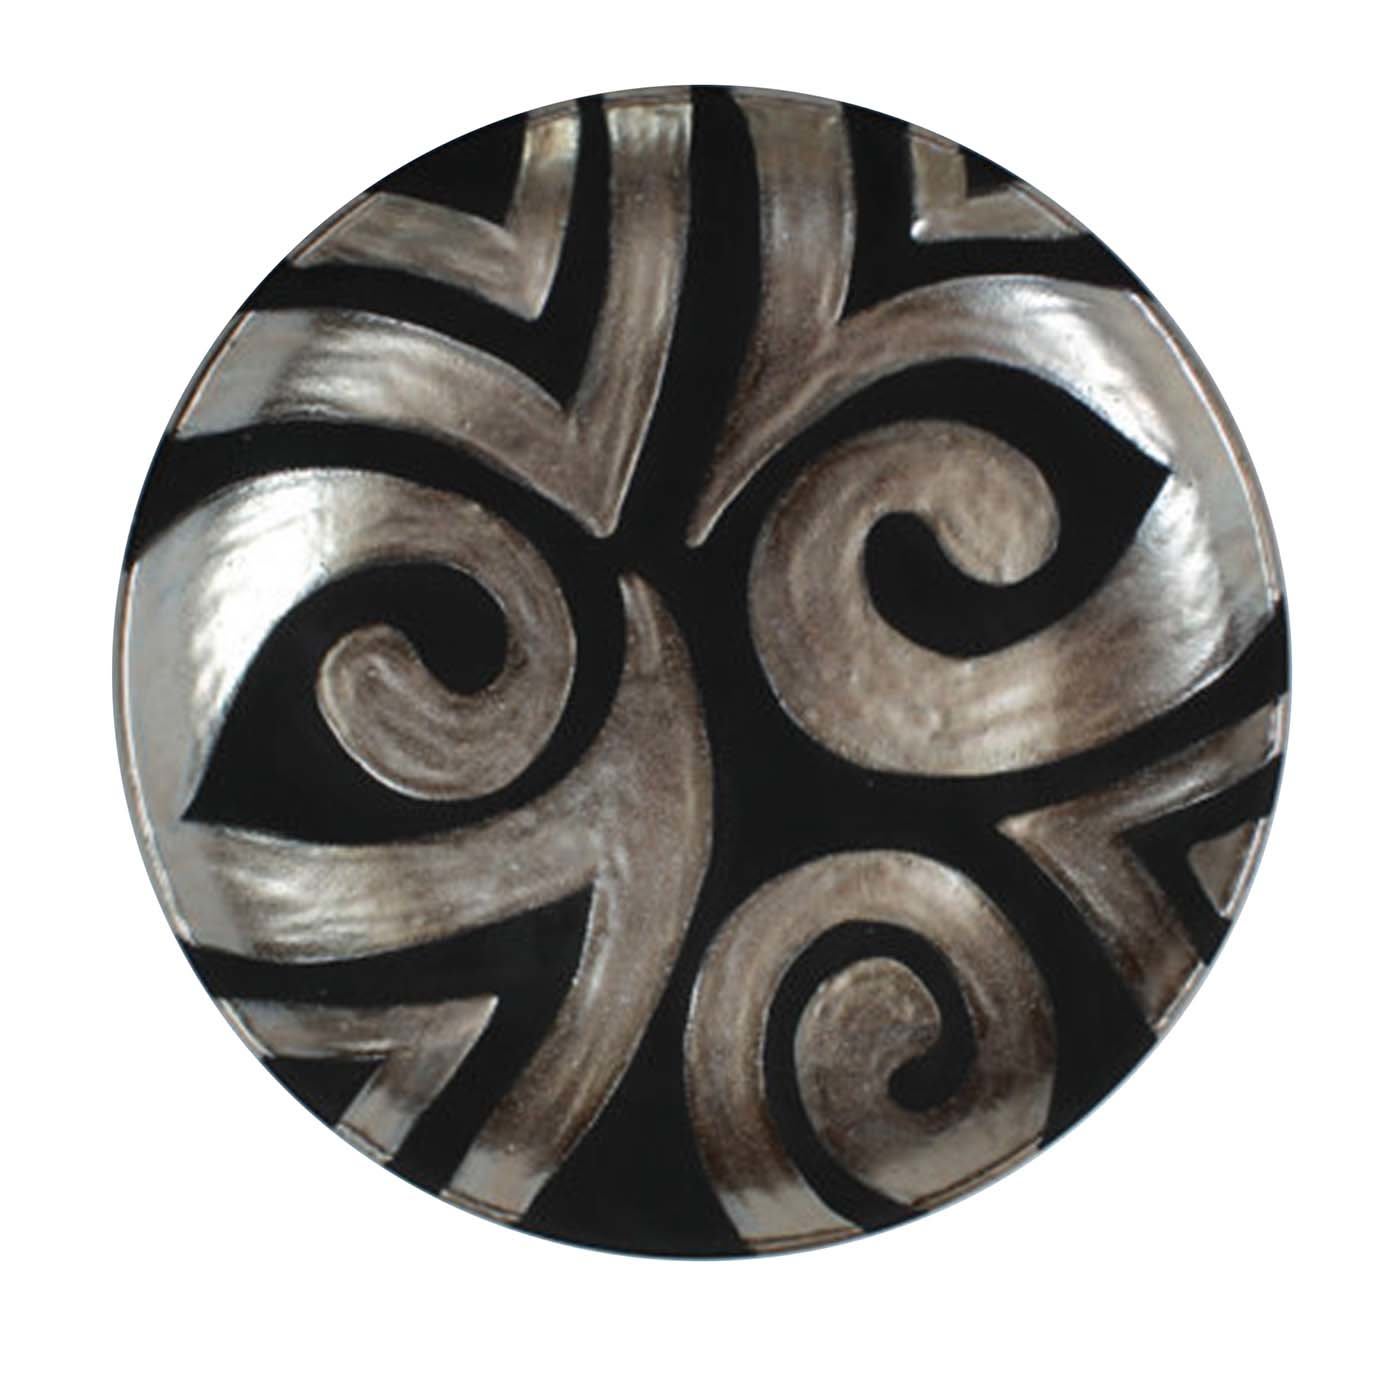 Tribal2 ceramic plate - Ceramiche Artistiche Giannini